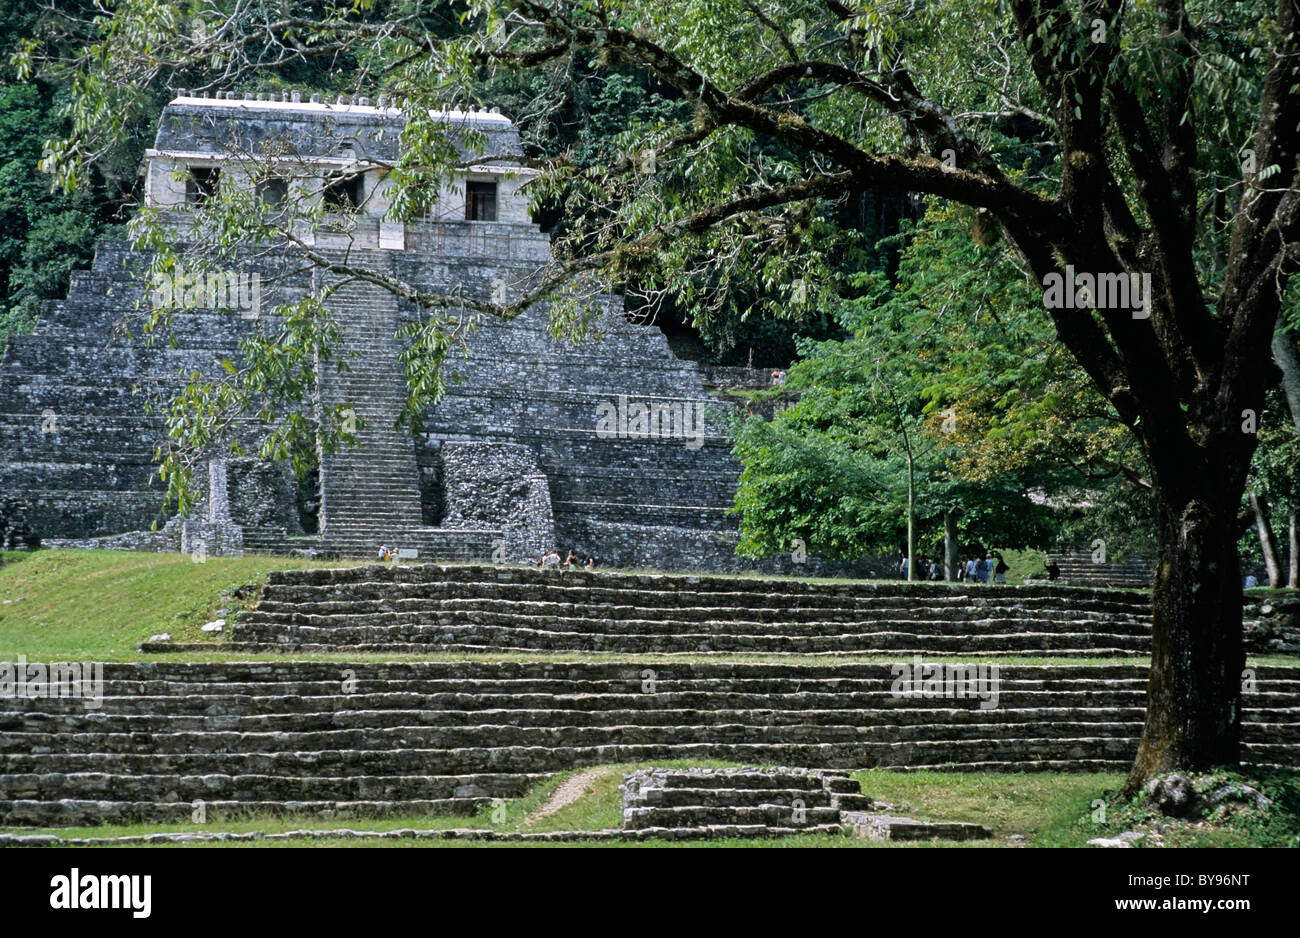 L'État de Chiapas, Mexique : le Temple des Inscriptions de Palenque Banque D'Images